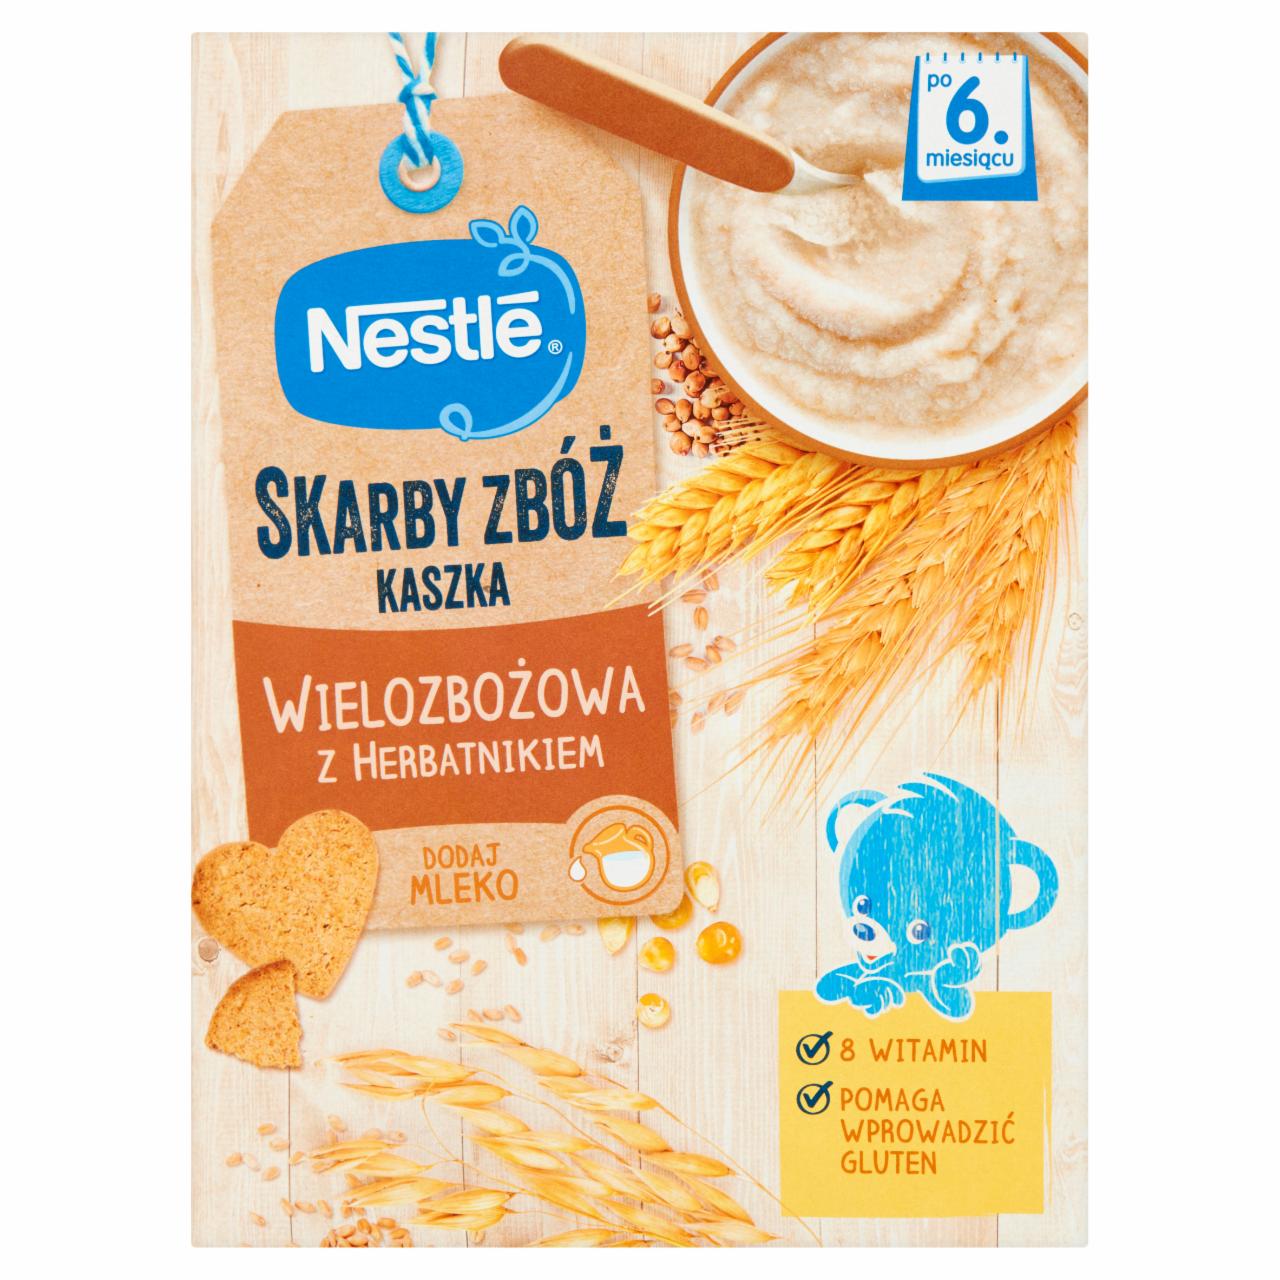 Zdjęcia - Nestlé Skarby Zbóż Kaszka wielozbożowa z herbatnikiem dla niemowląt po 6. miesiącu 250 g